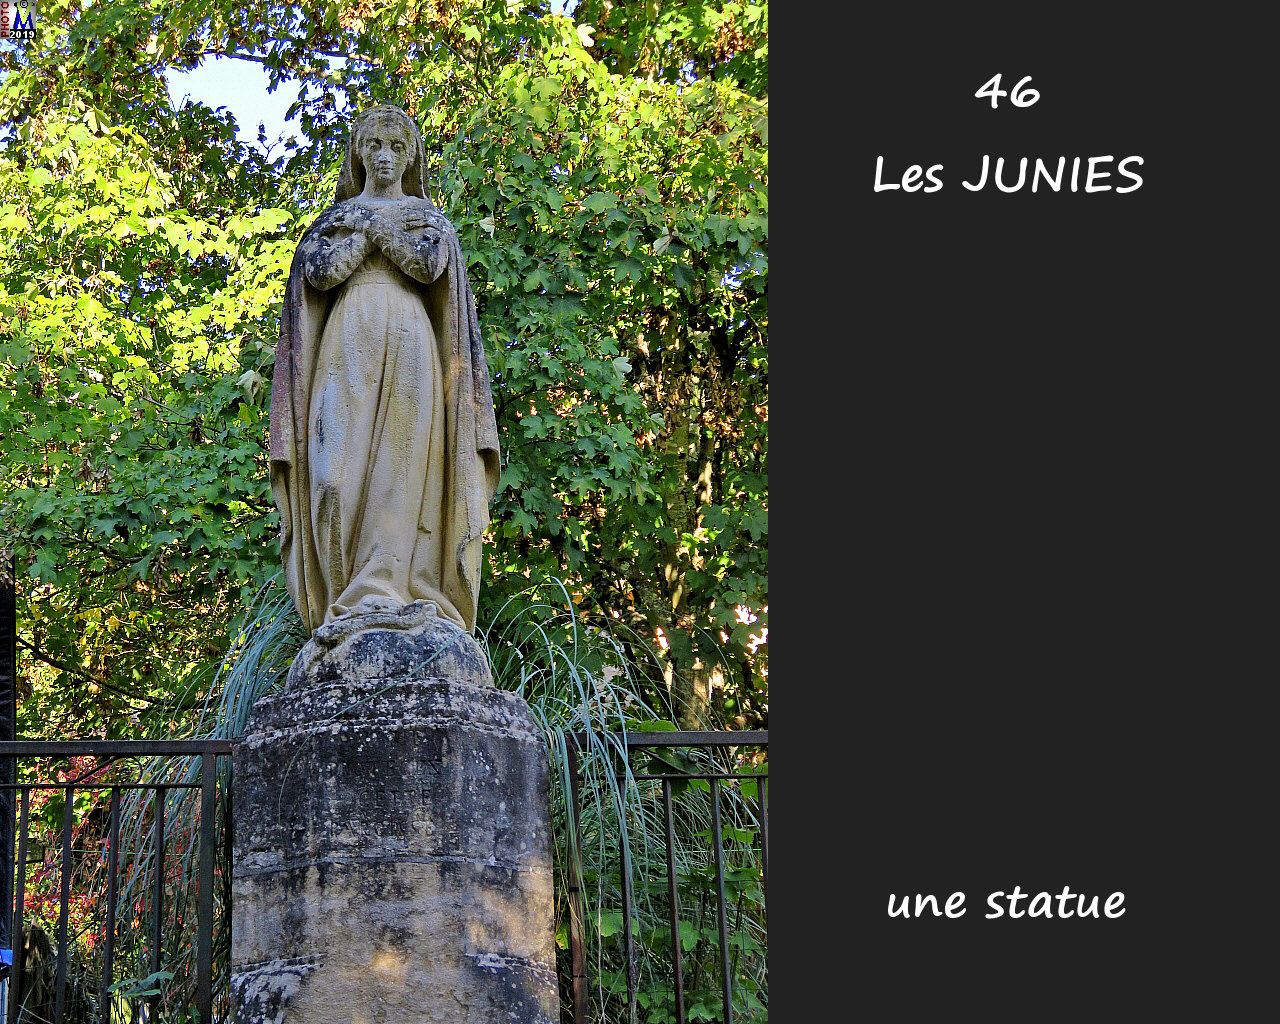 46JUNIES_statue_100.jpg